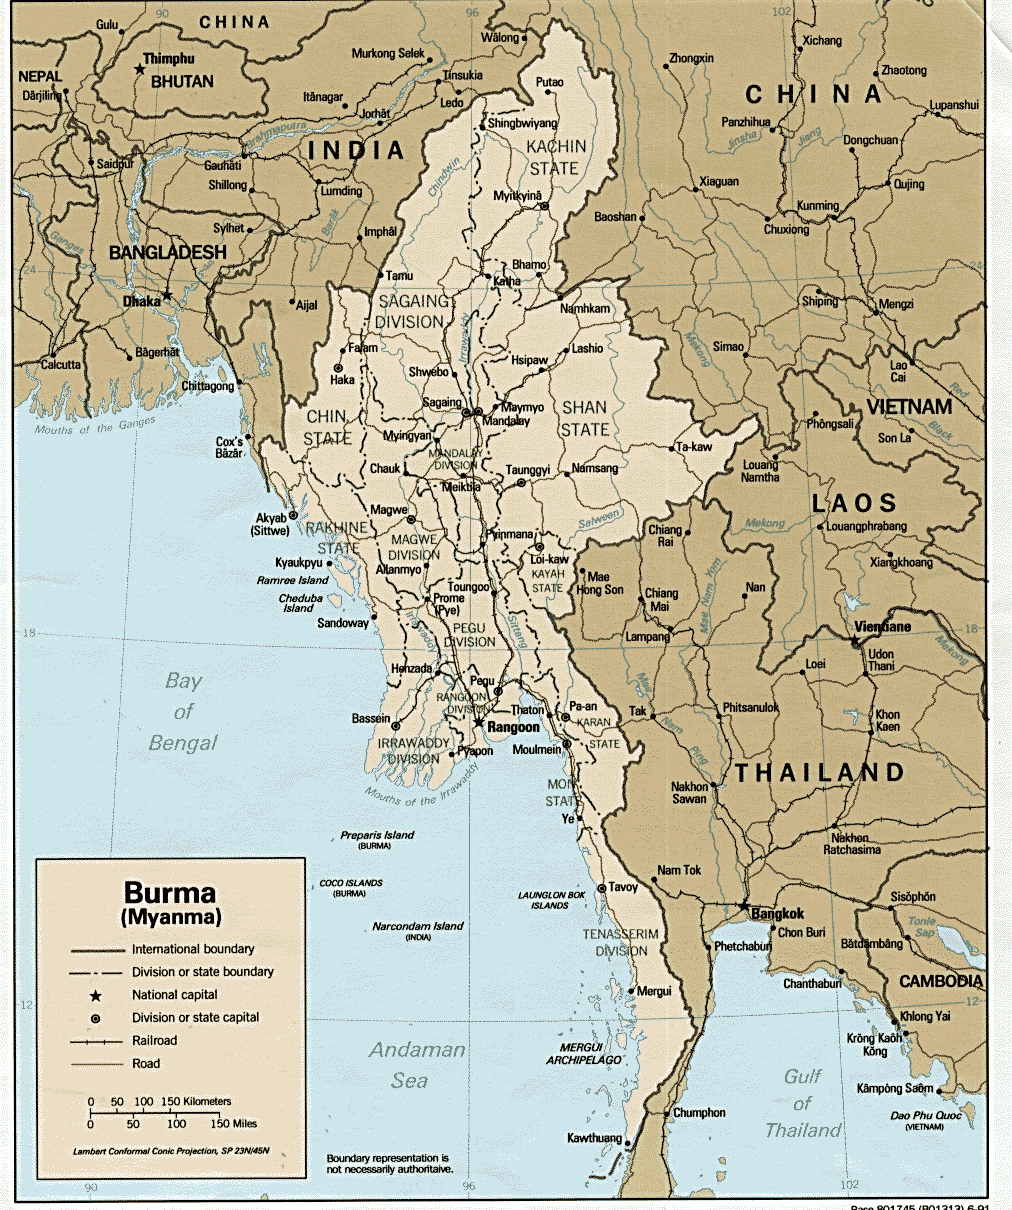 高清缅甸木姐地图图片